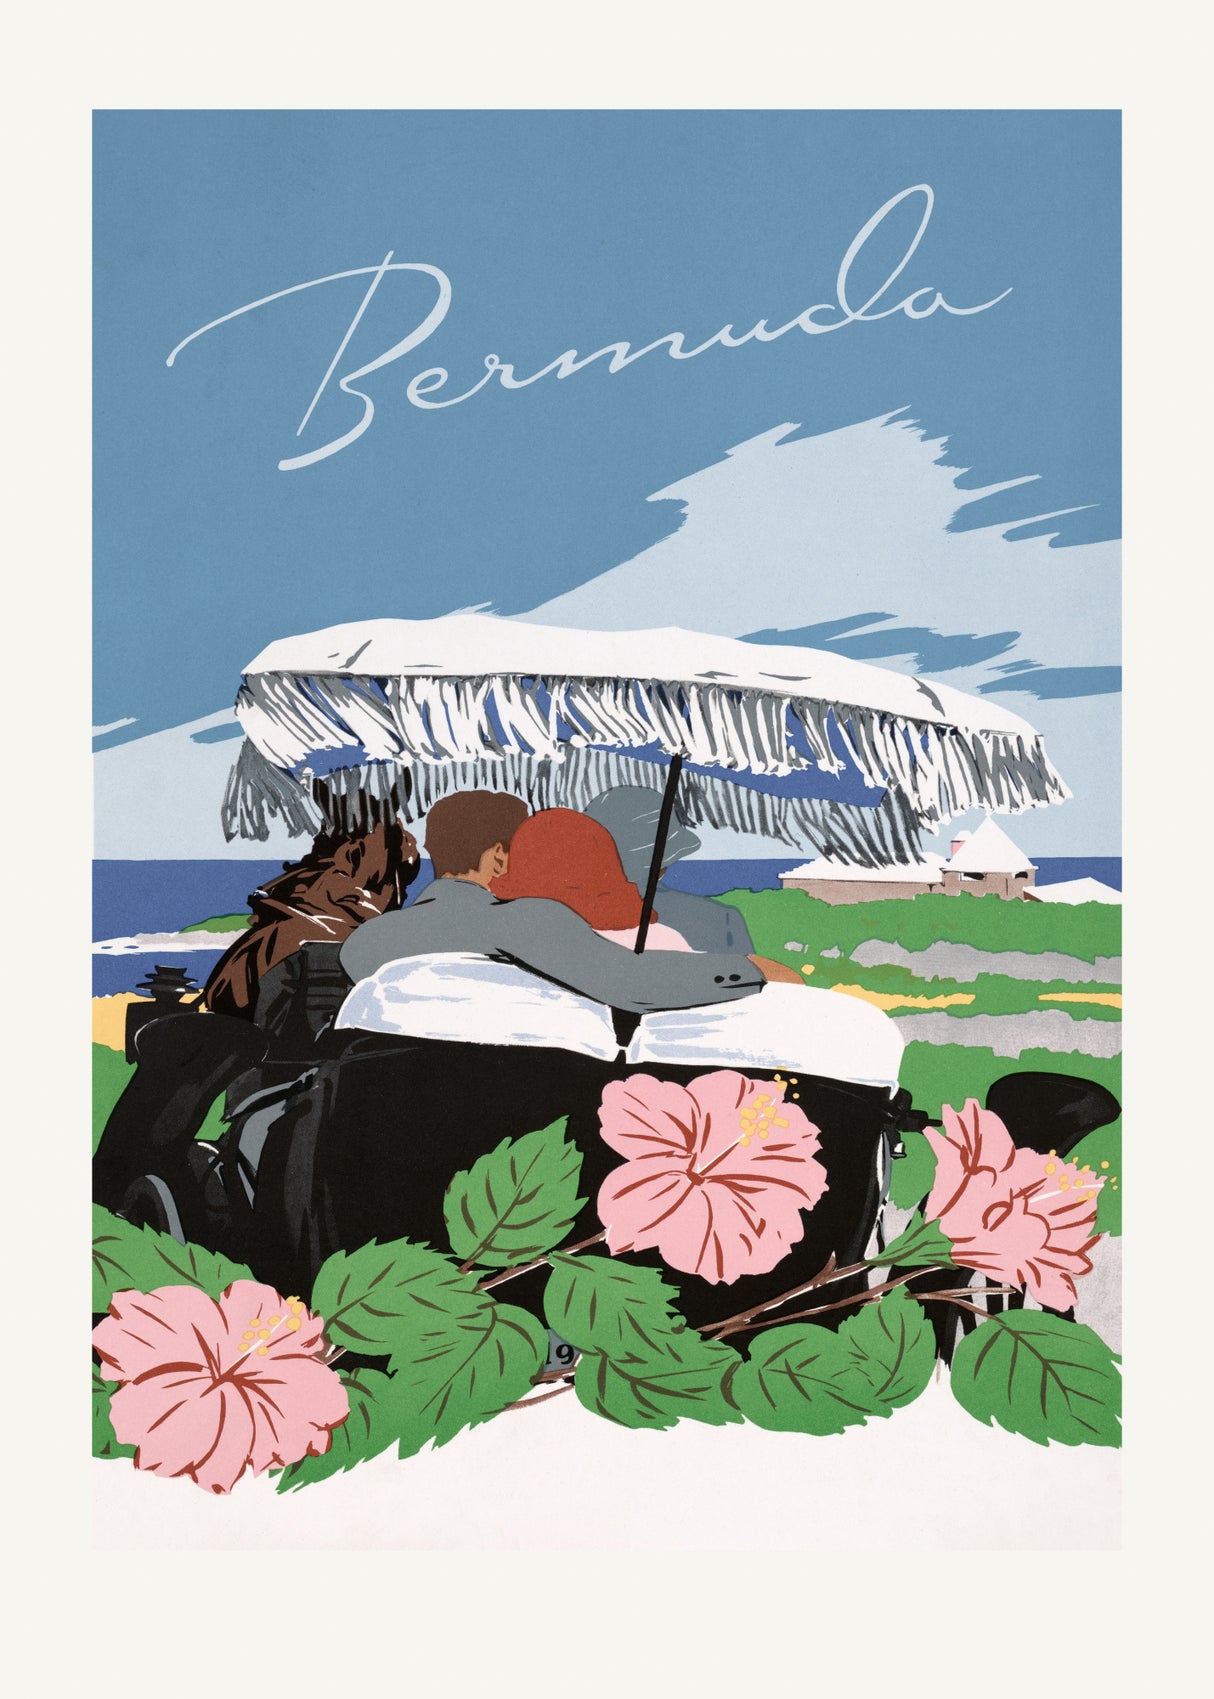 Bermuda (1940 1950) By Adolph Treidler Poster och Canvastavla